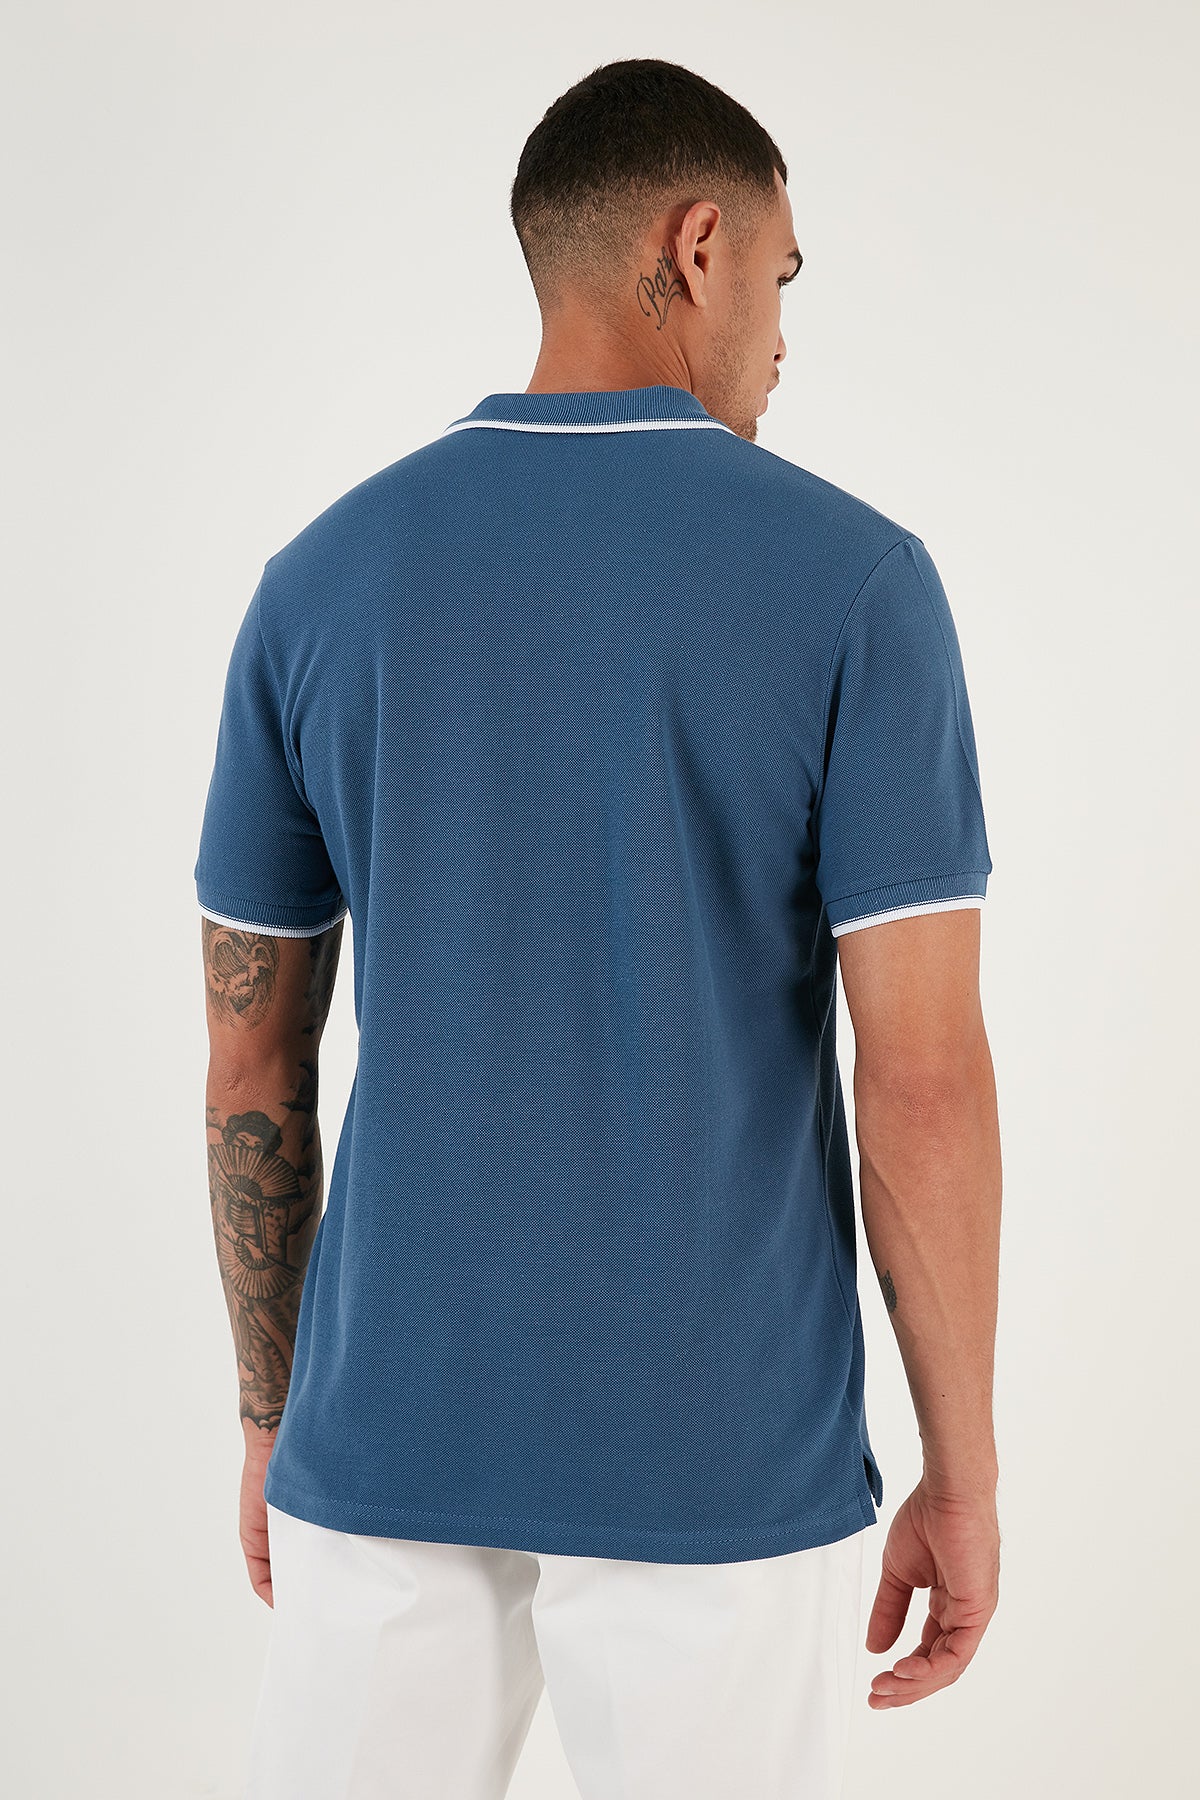 Buratti % 100 Pamuk Düğmeli Slim Fit Erkek Polo T Shirt 5902118 Koyu Mavi-Beyaz